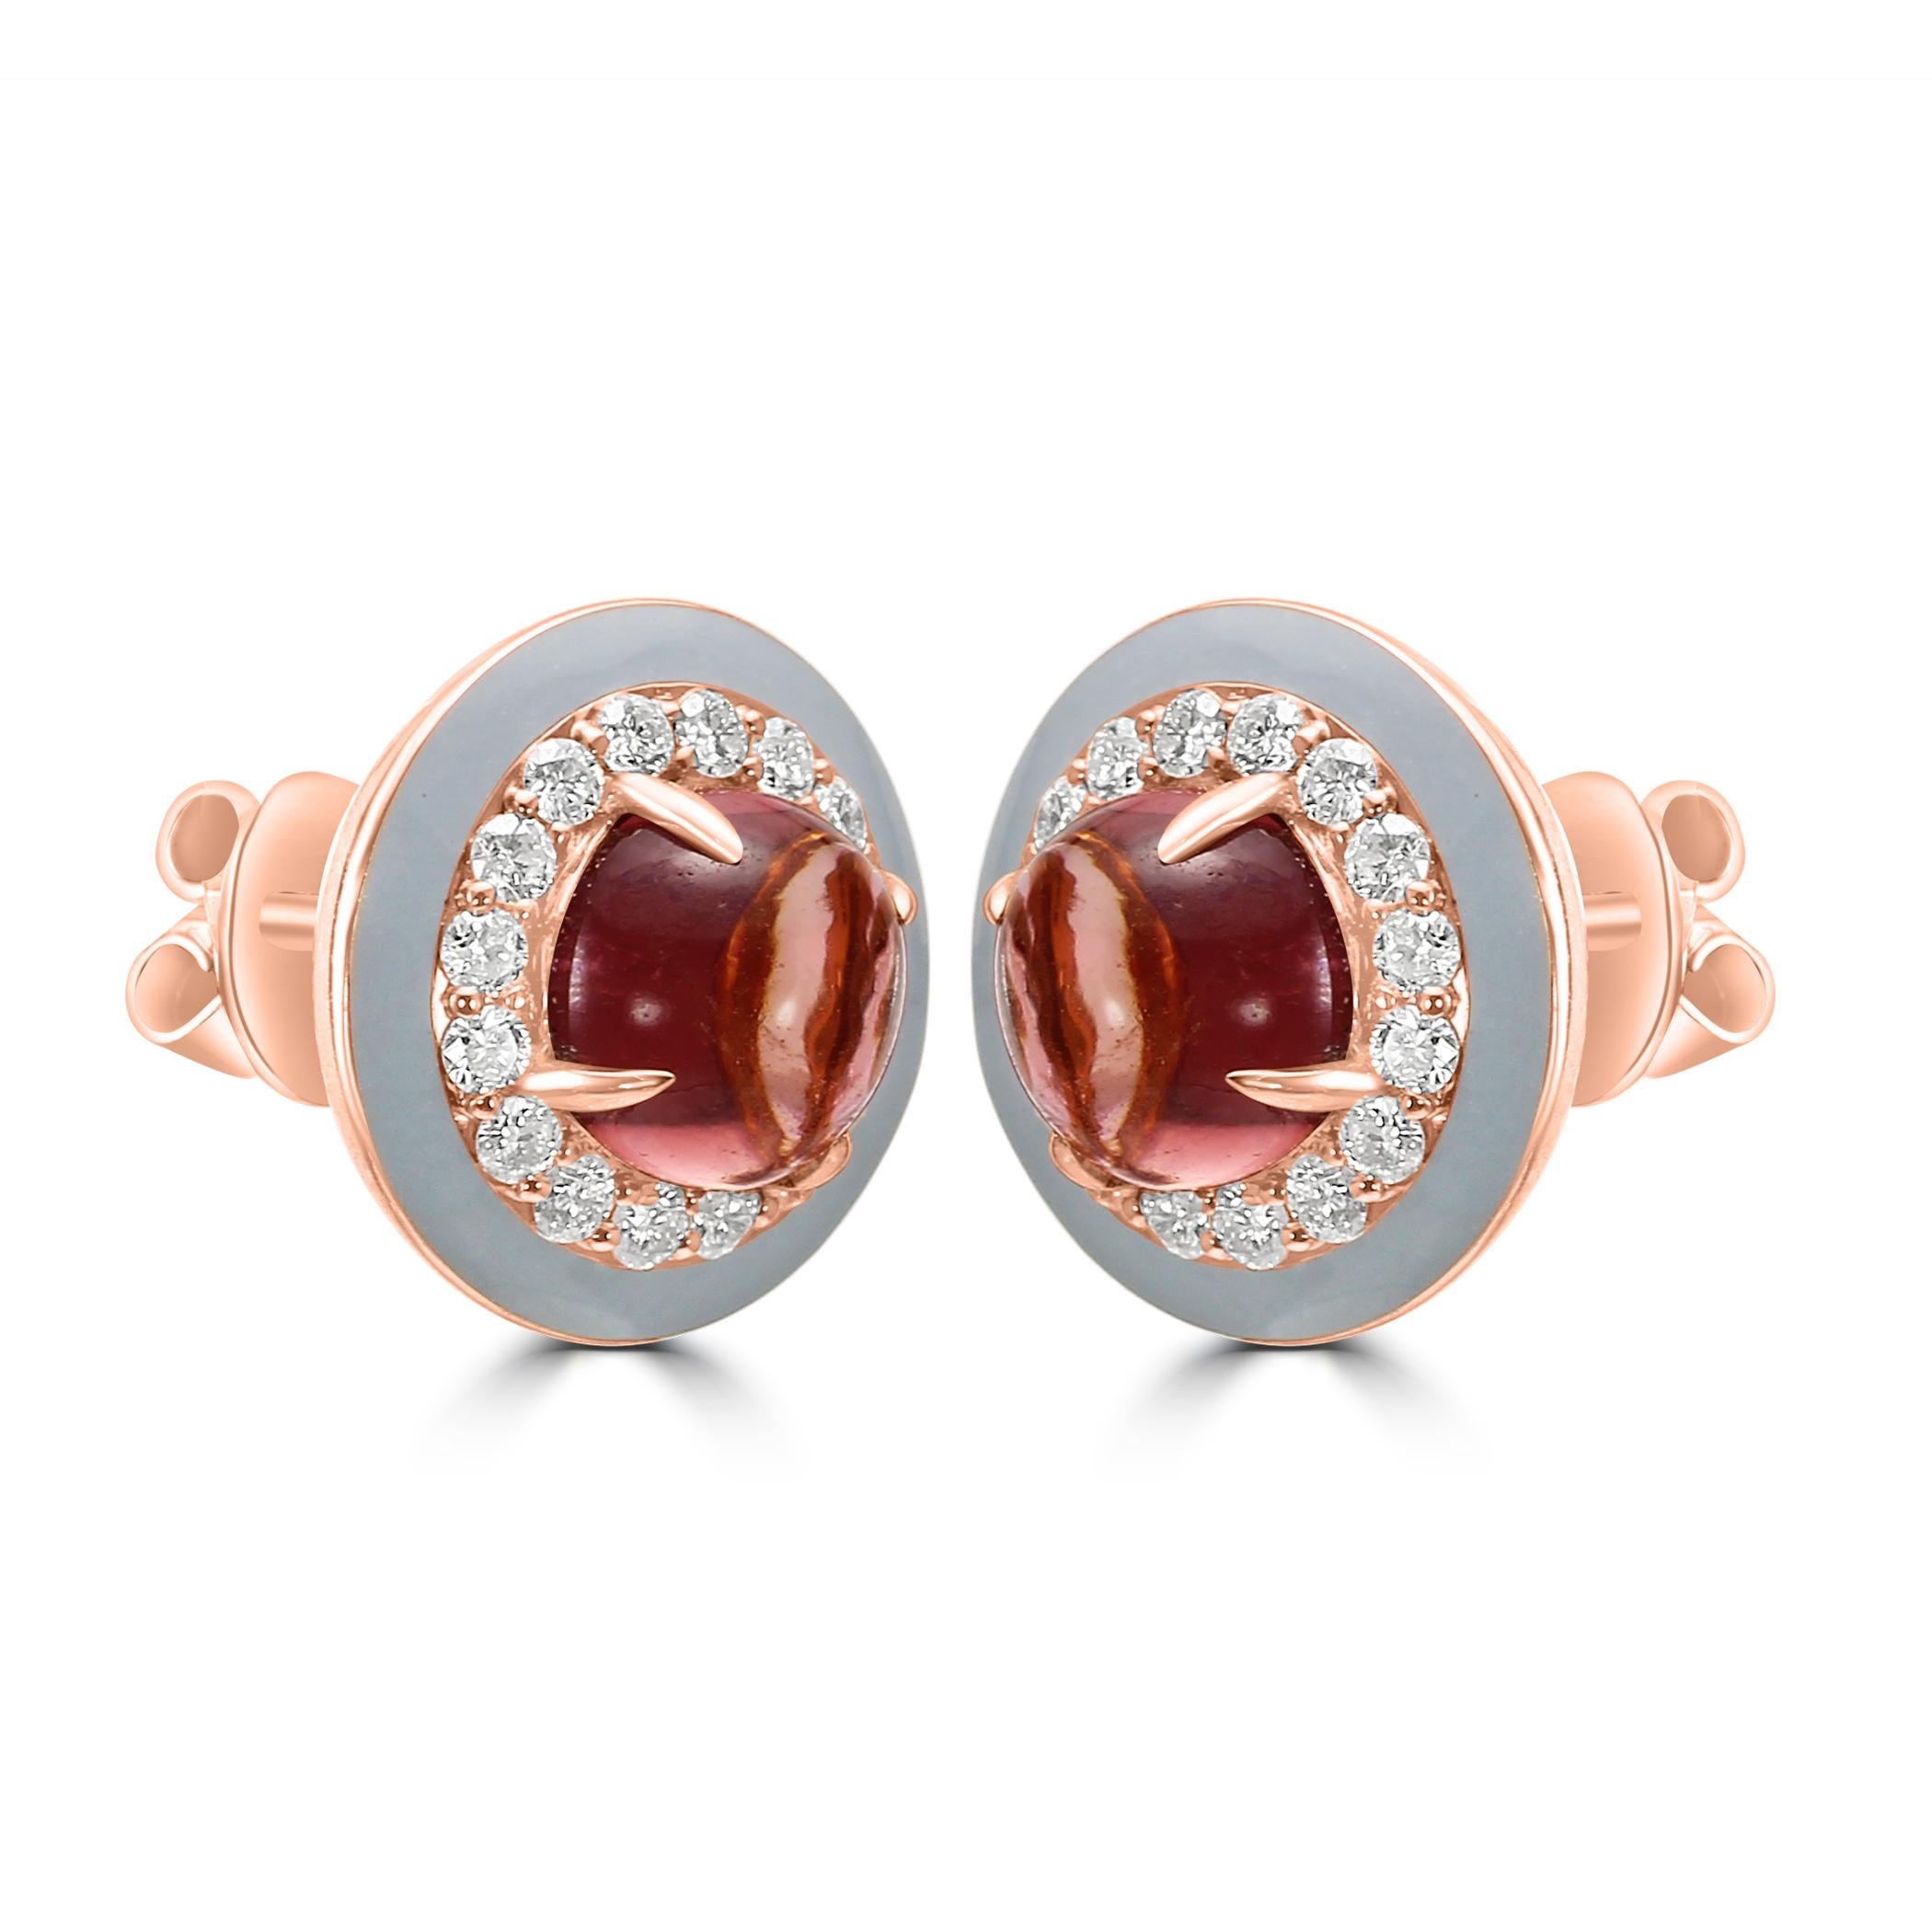 Tauchen Sie ein in die glamouröse Welt des Art Déco mit unseren Fashion Stud Art-Deco Earrings, einer atemberaubenden Mischung aus Vintage-inspiriertem Design und moderner Schönheit. 

Diese Ohrringe sind mit einem faszinierenden rosaroten Turmalin